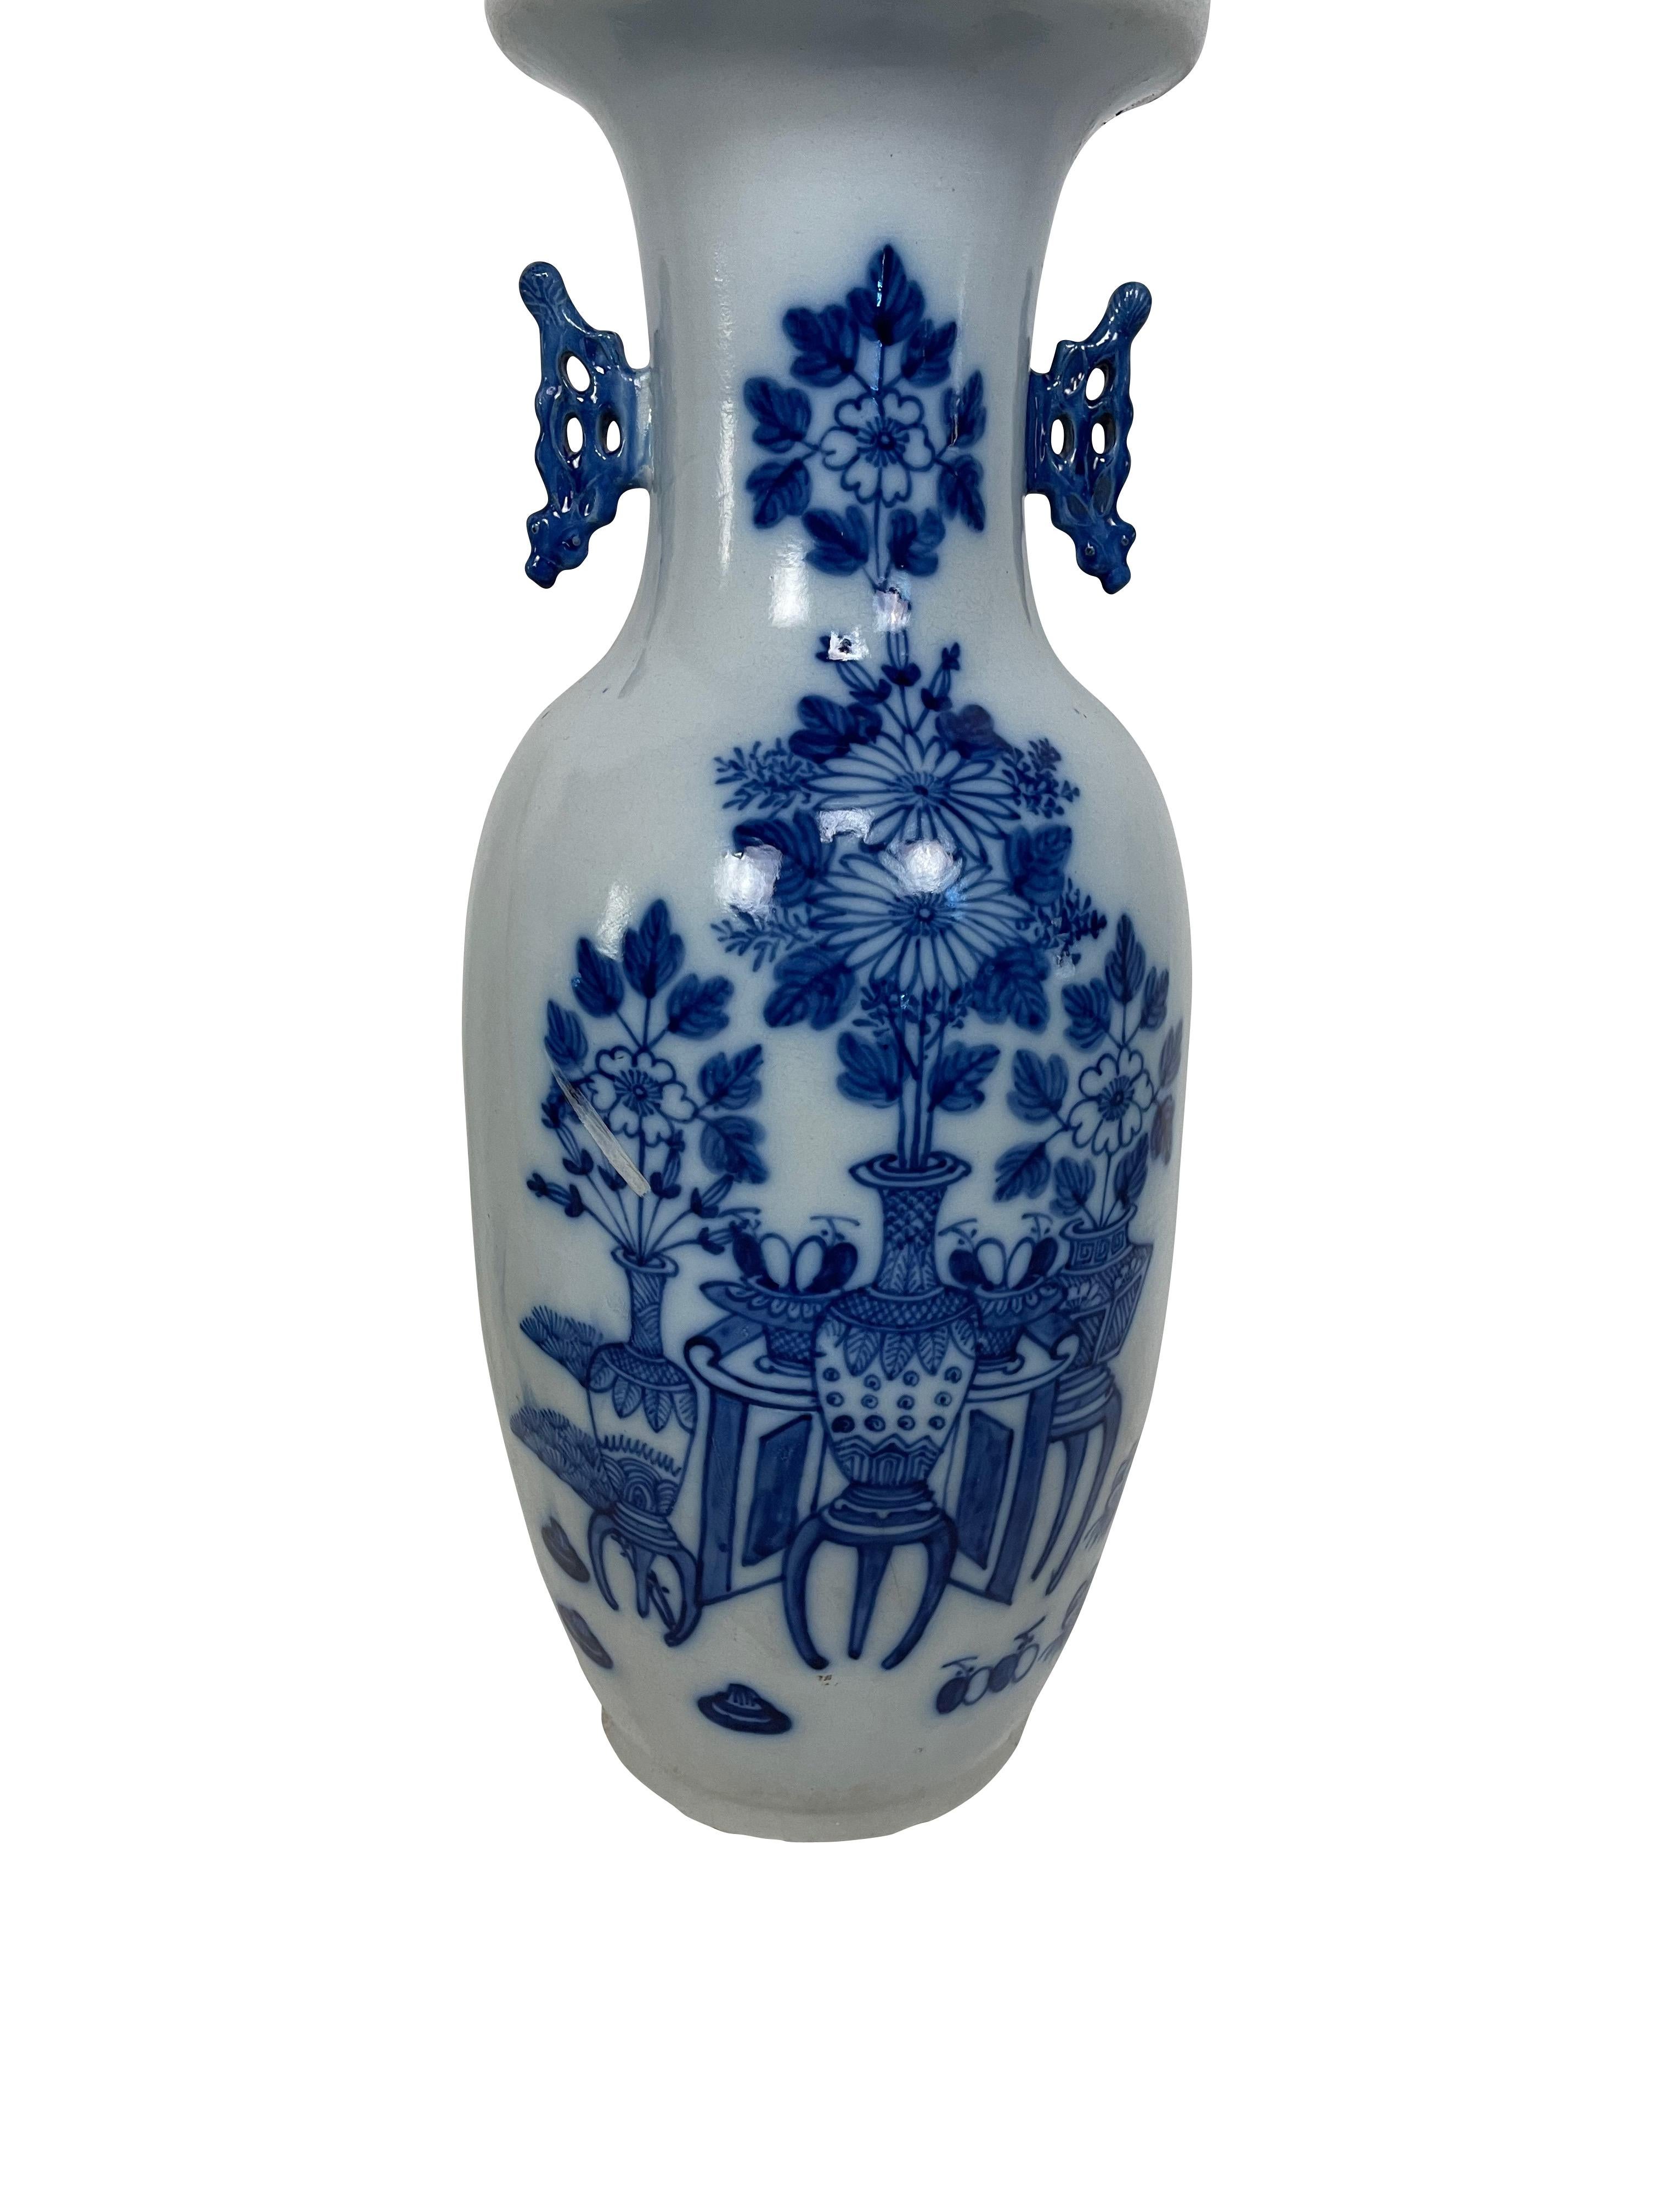 Vase balustre en porcelaine chinoise du XIXe siècle, décoré de fleurs et d'objets divers en bas-relief et en bleu de cobalt sous glaçure sur fond blanc. Le vase a des poignées stylisées moulées en bleu cobalt de chaque côté du large col en entonnoir